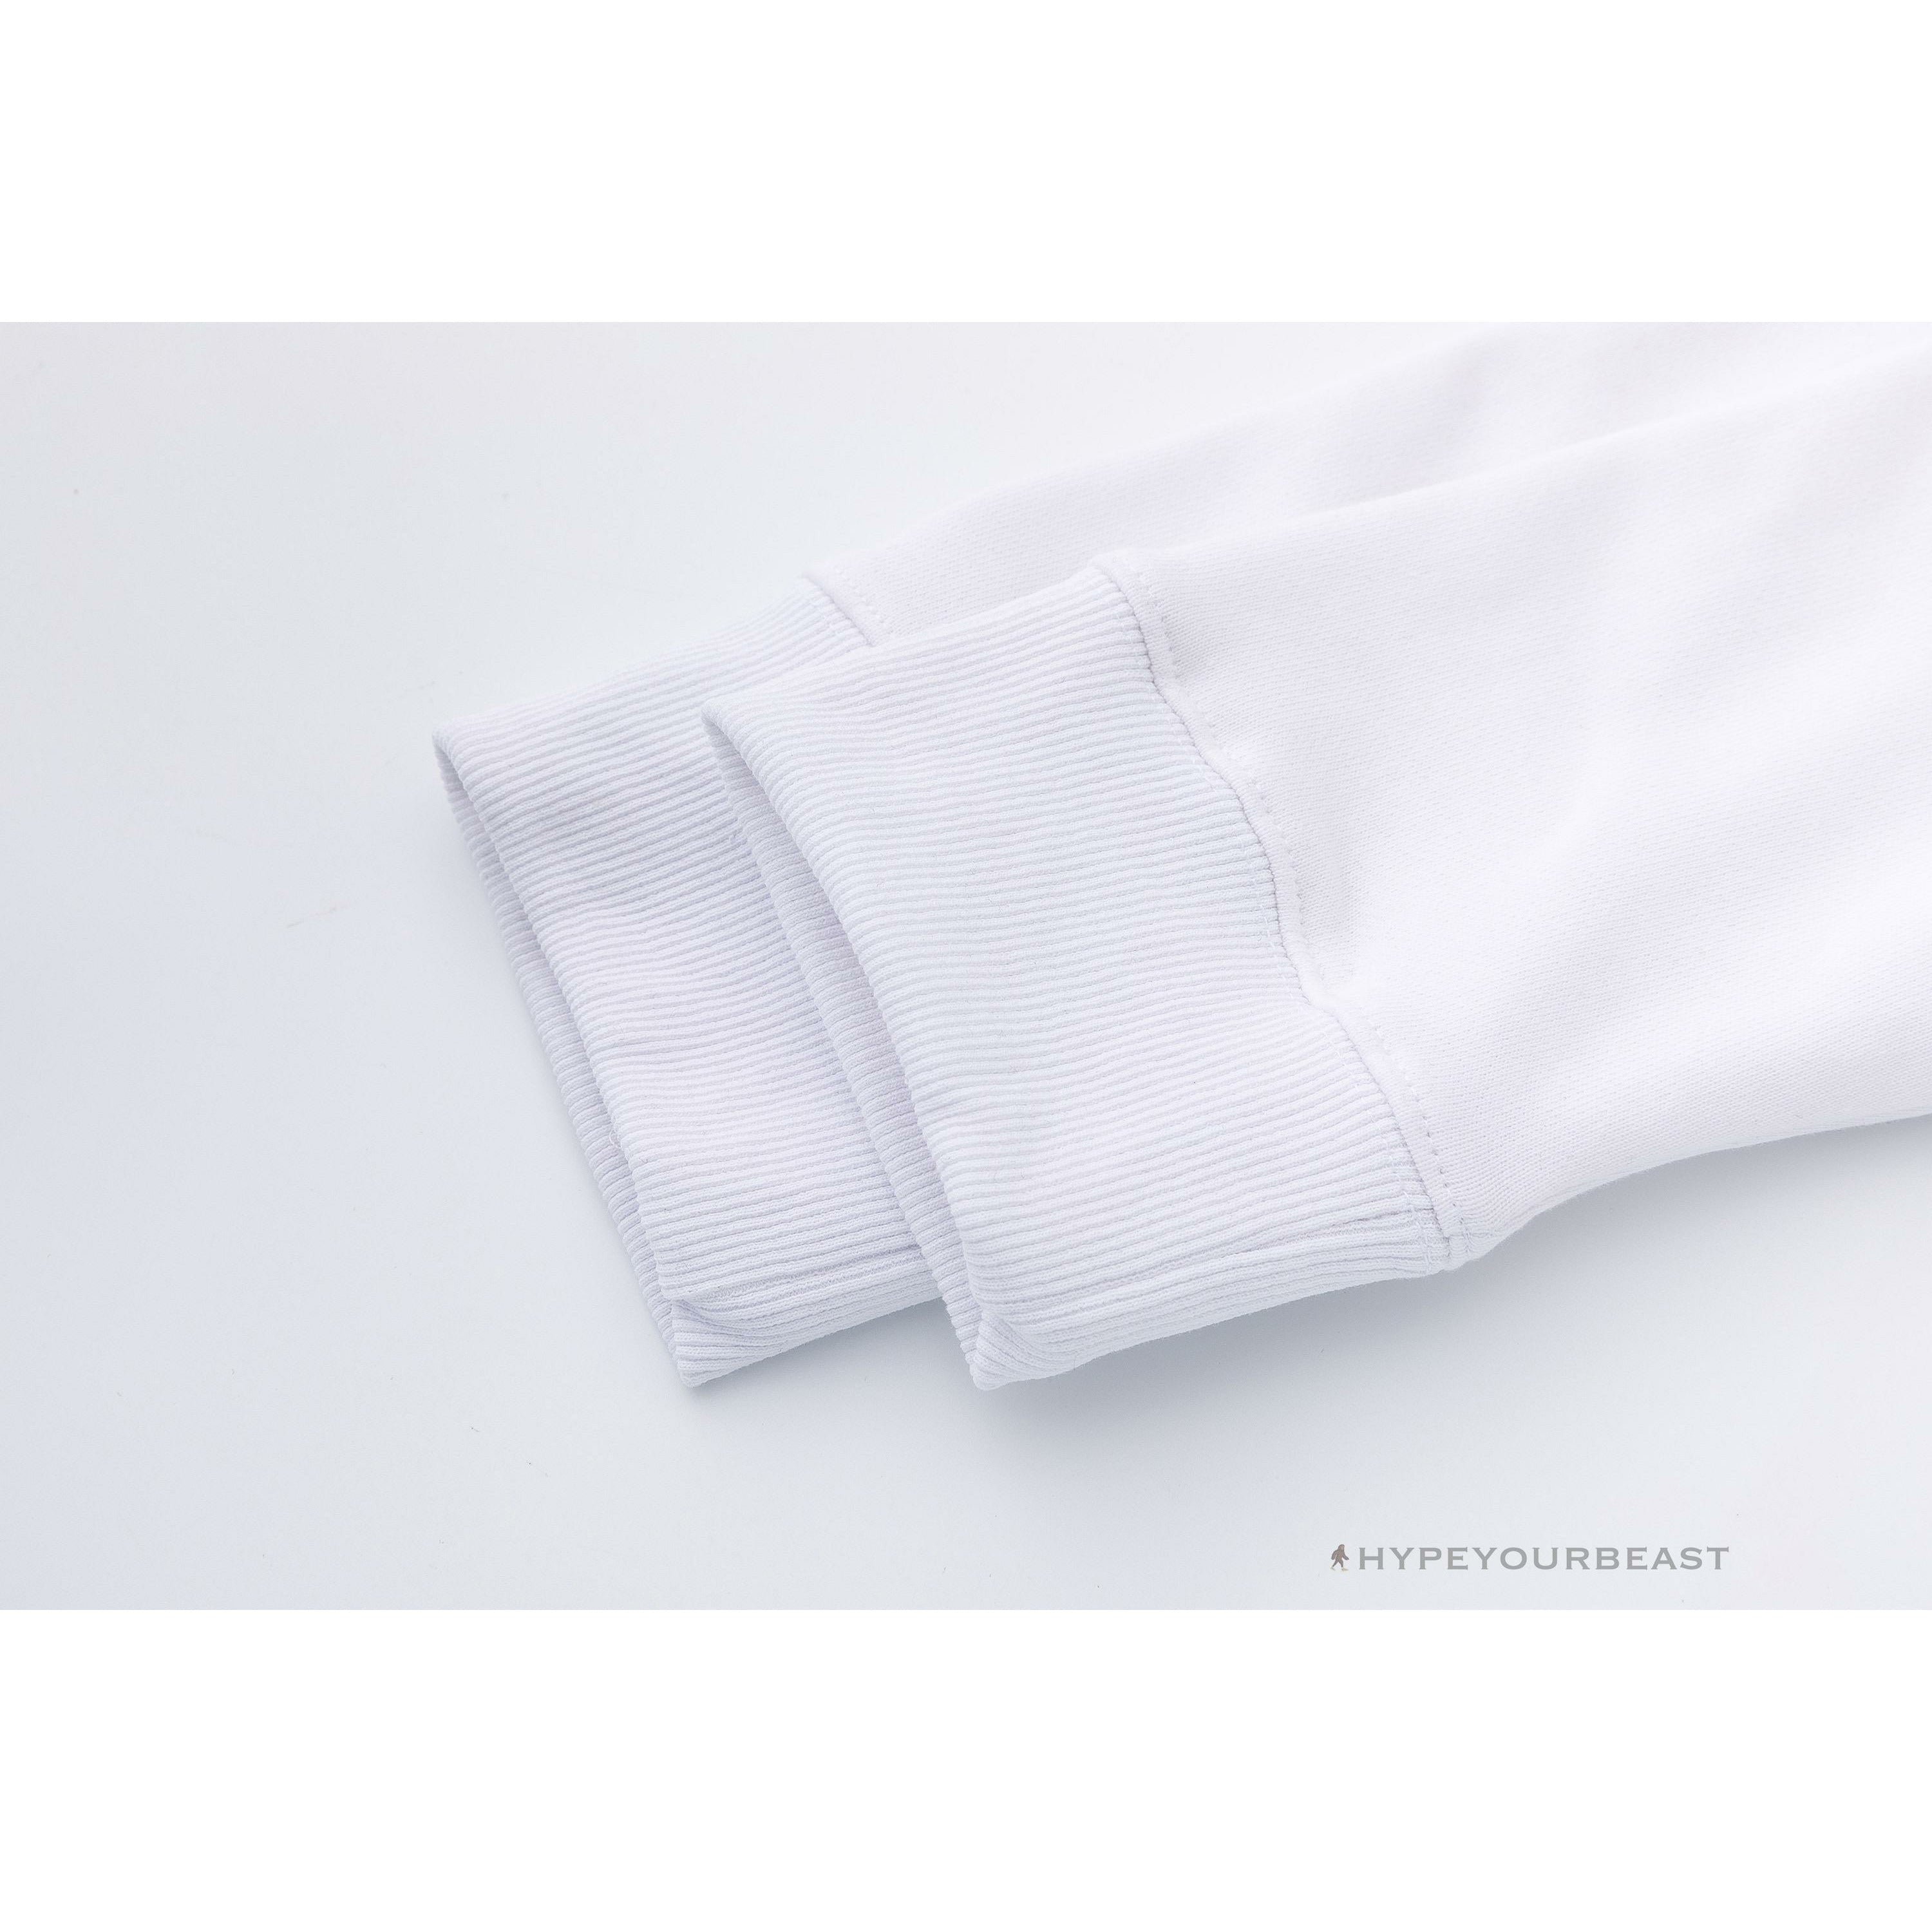 Off-White X Nike Shirt Doraemon White